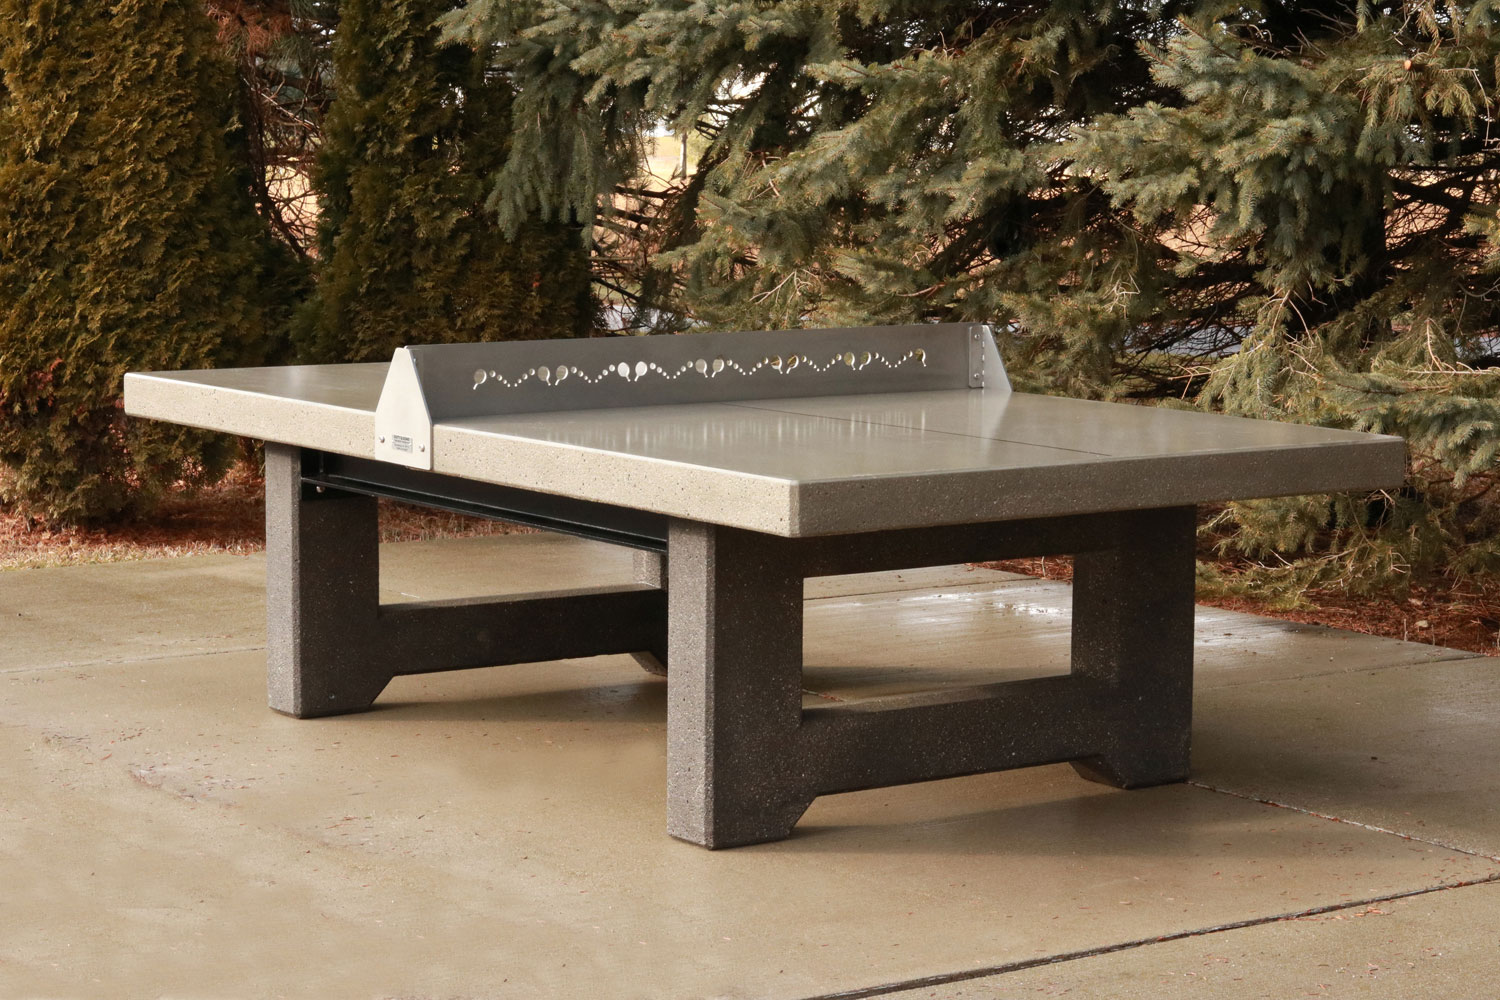 Concrete ping pong/tennis table. Outdoor fun!